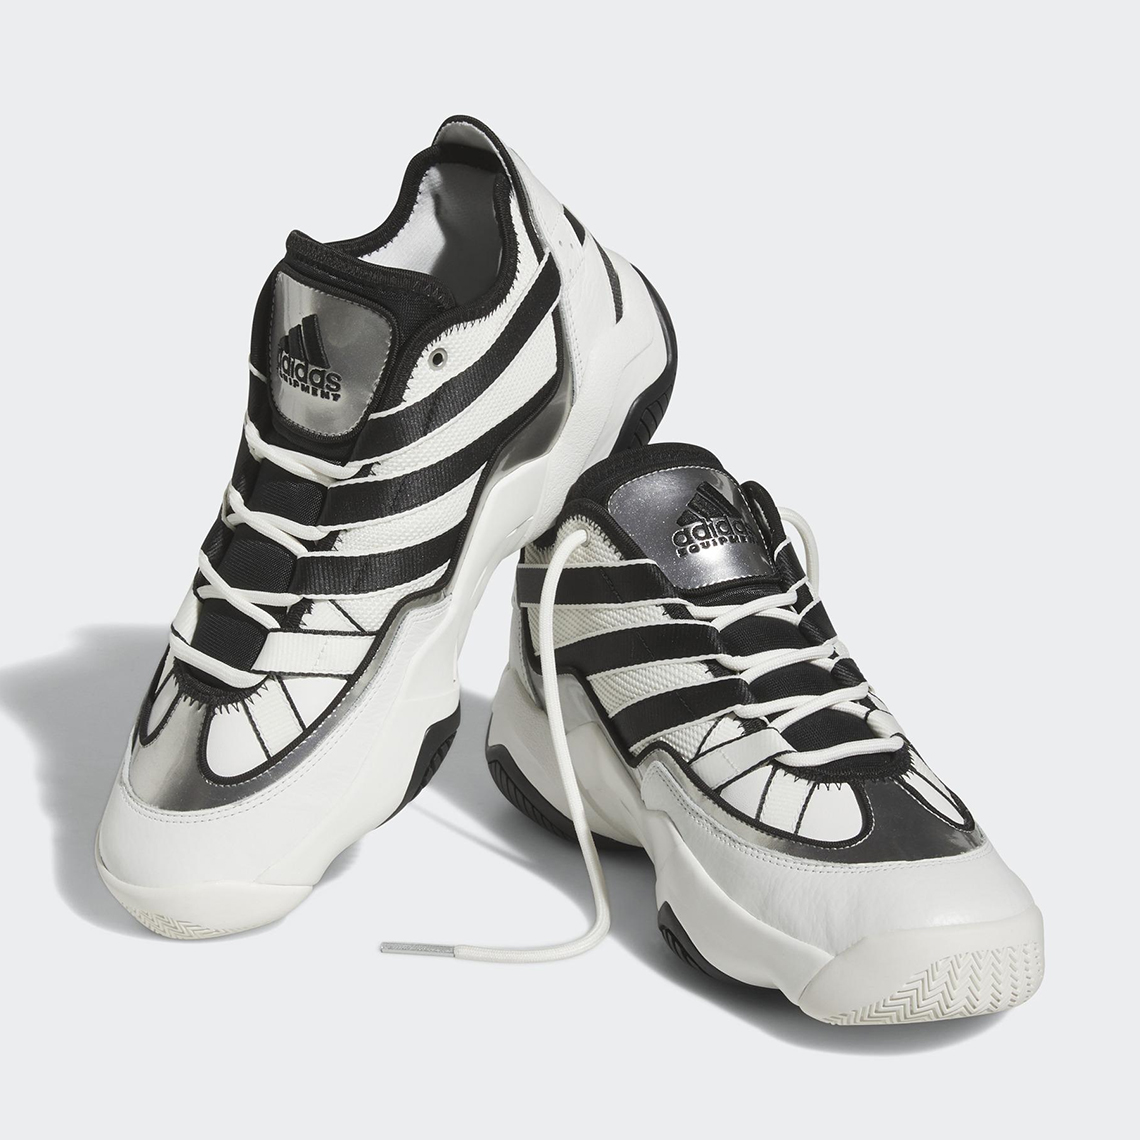 adidas Top Ten 2010 Release Date | SneakerNews.com